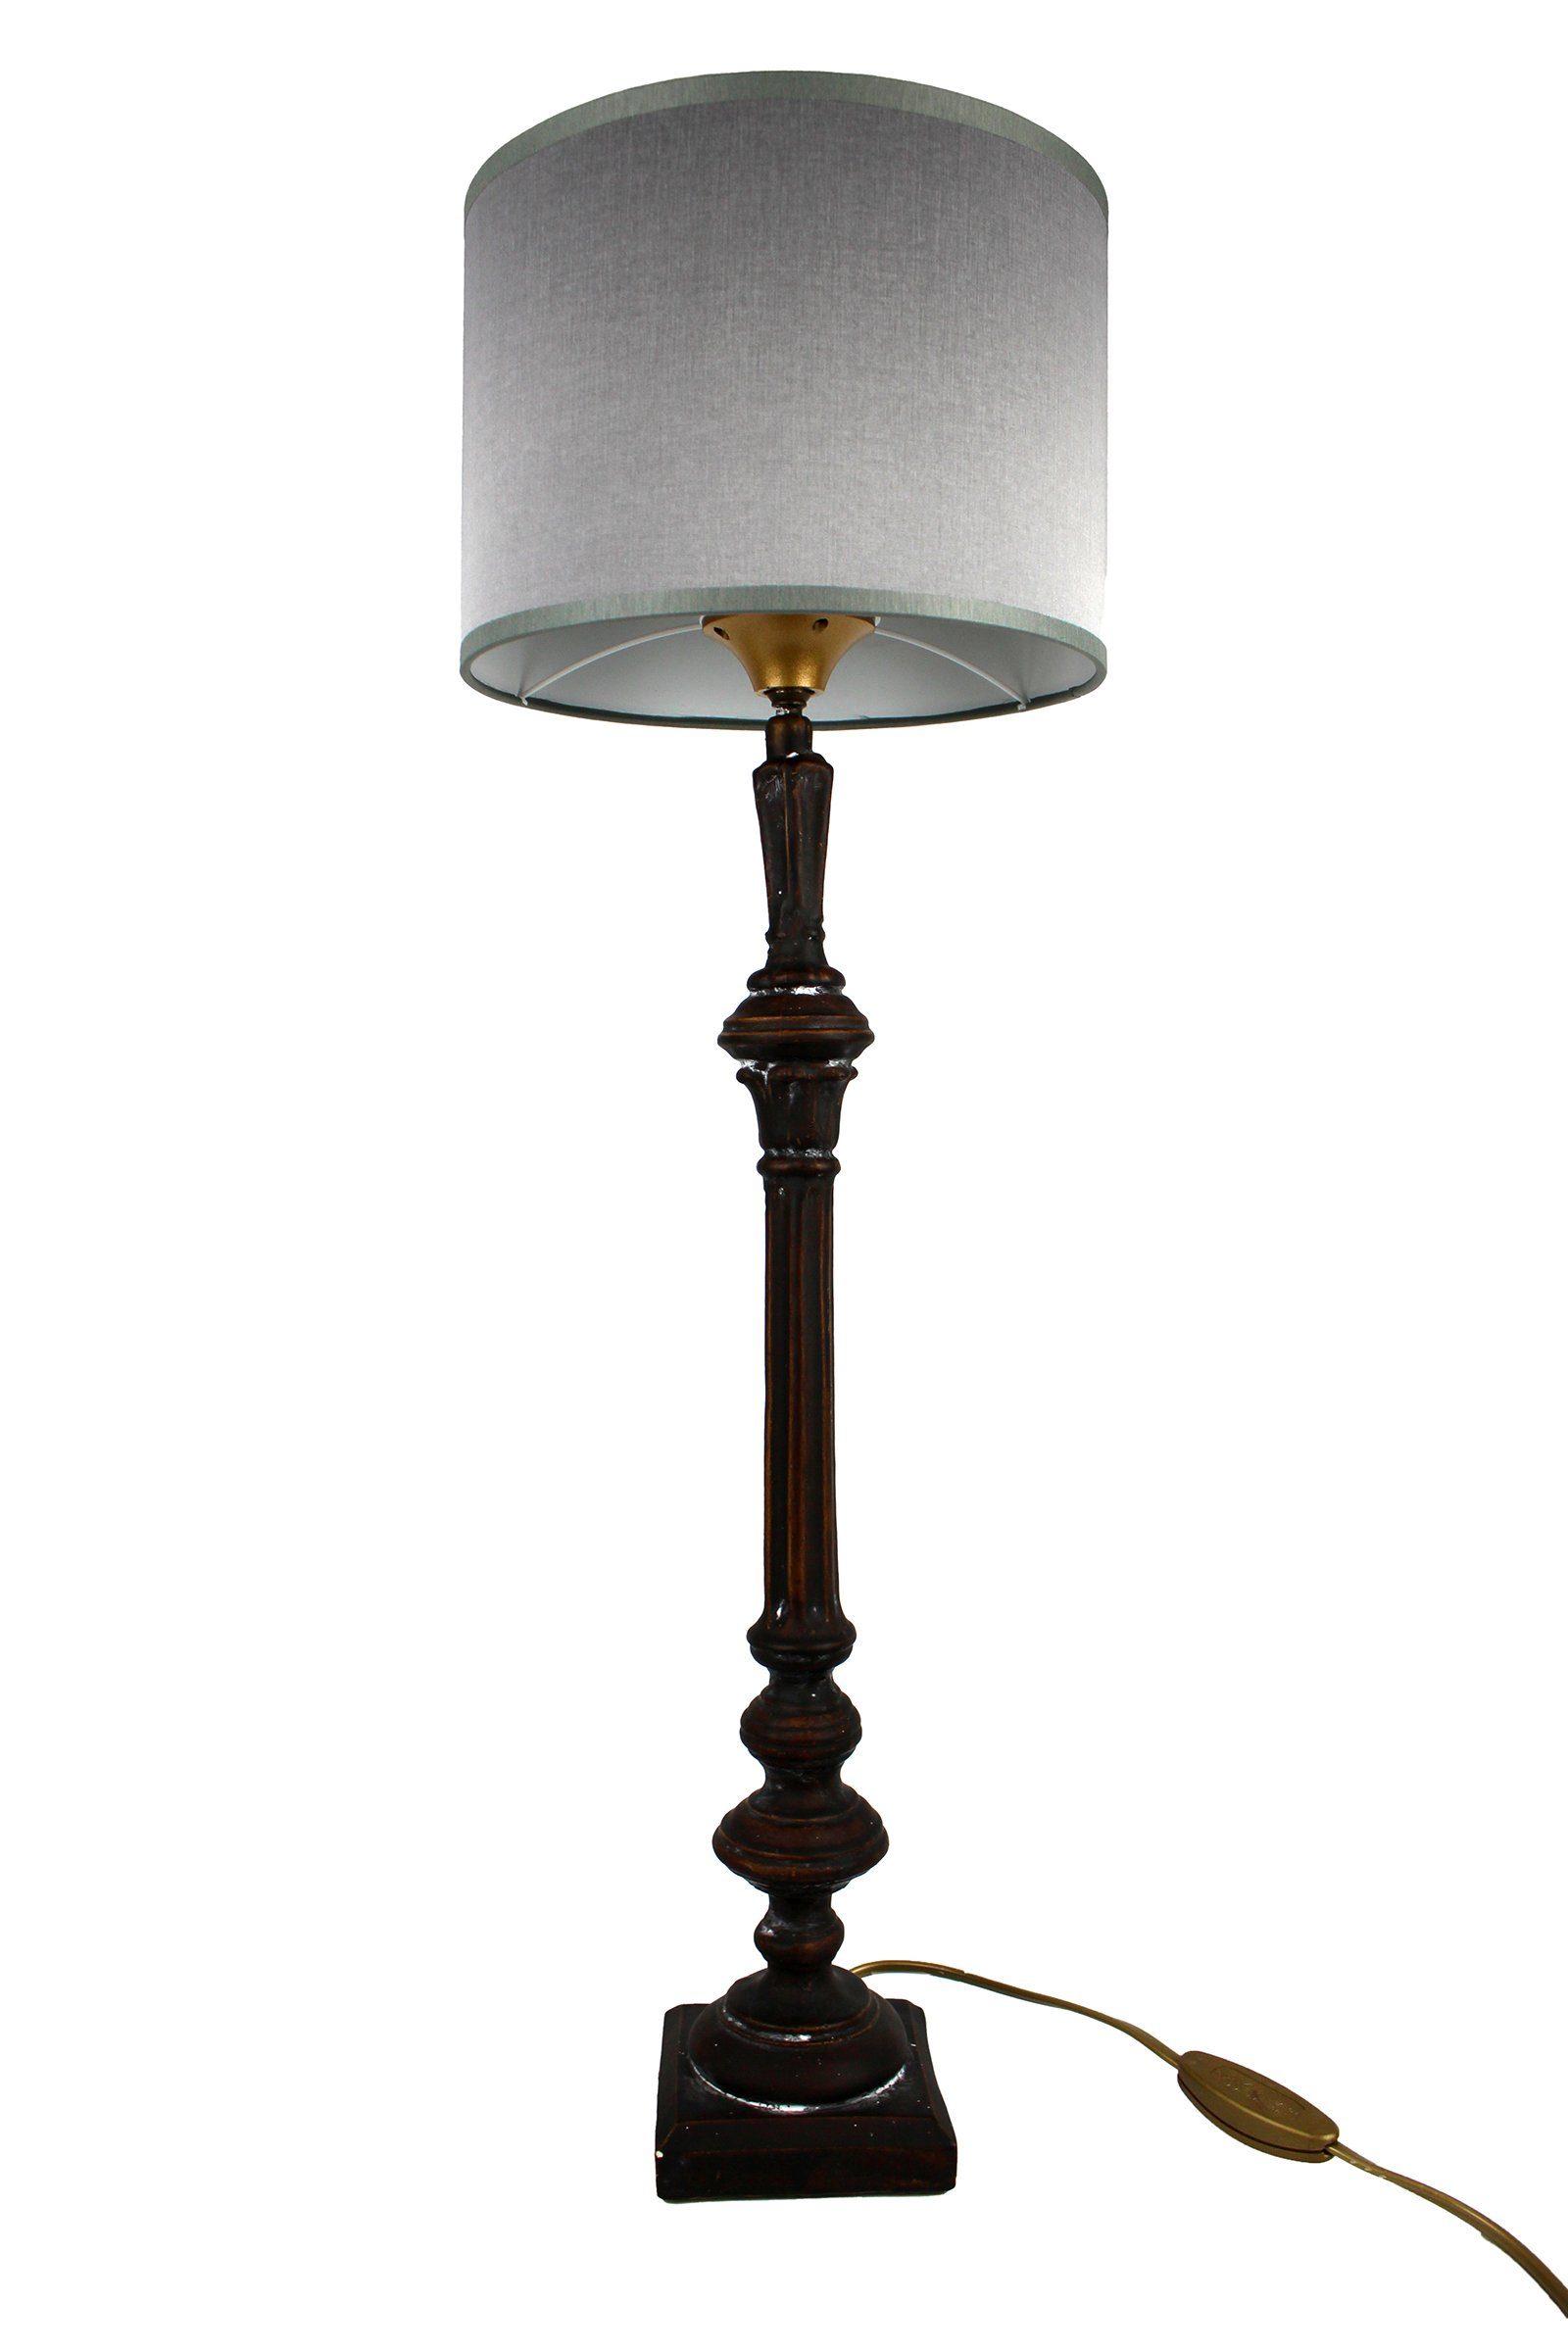 Signature Home Collection Tischleuchte Tischlampe schmal Holz gedrechselt lackiert mit Lampenschirm, ohne Leuchtmittel, warmweiß, handgefertigt in Italien schwarz - grau | Tischlampen